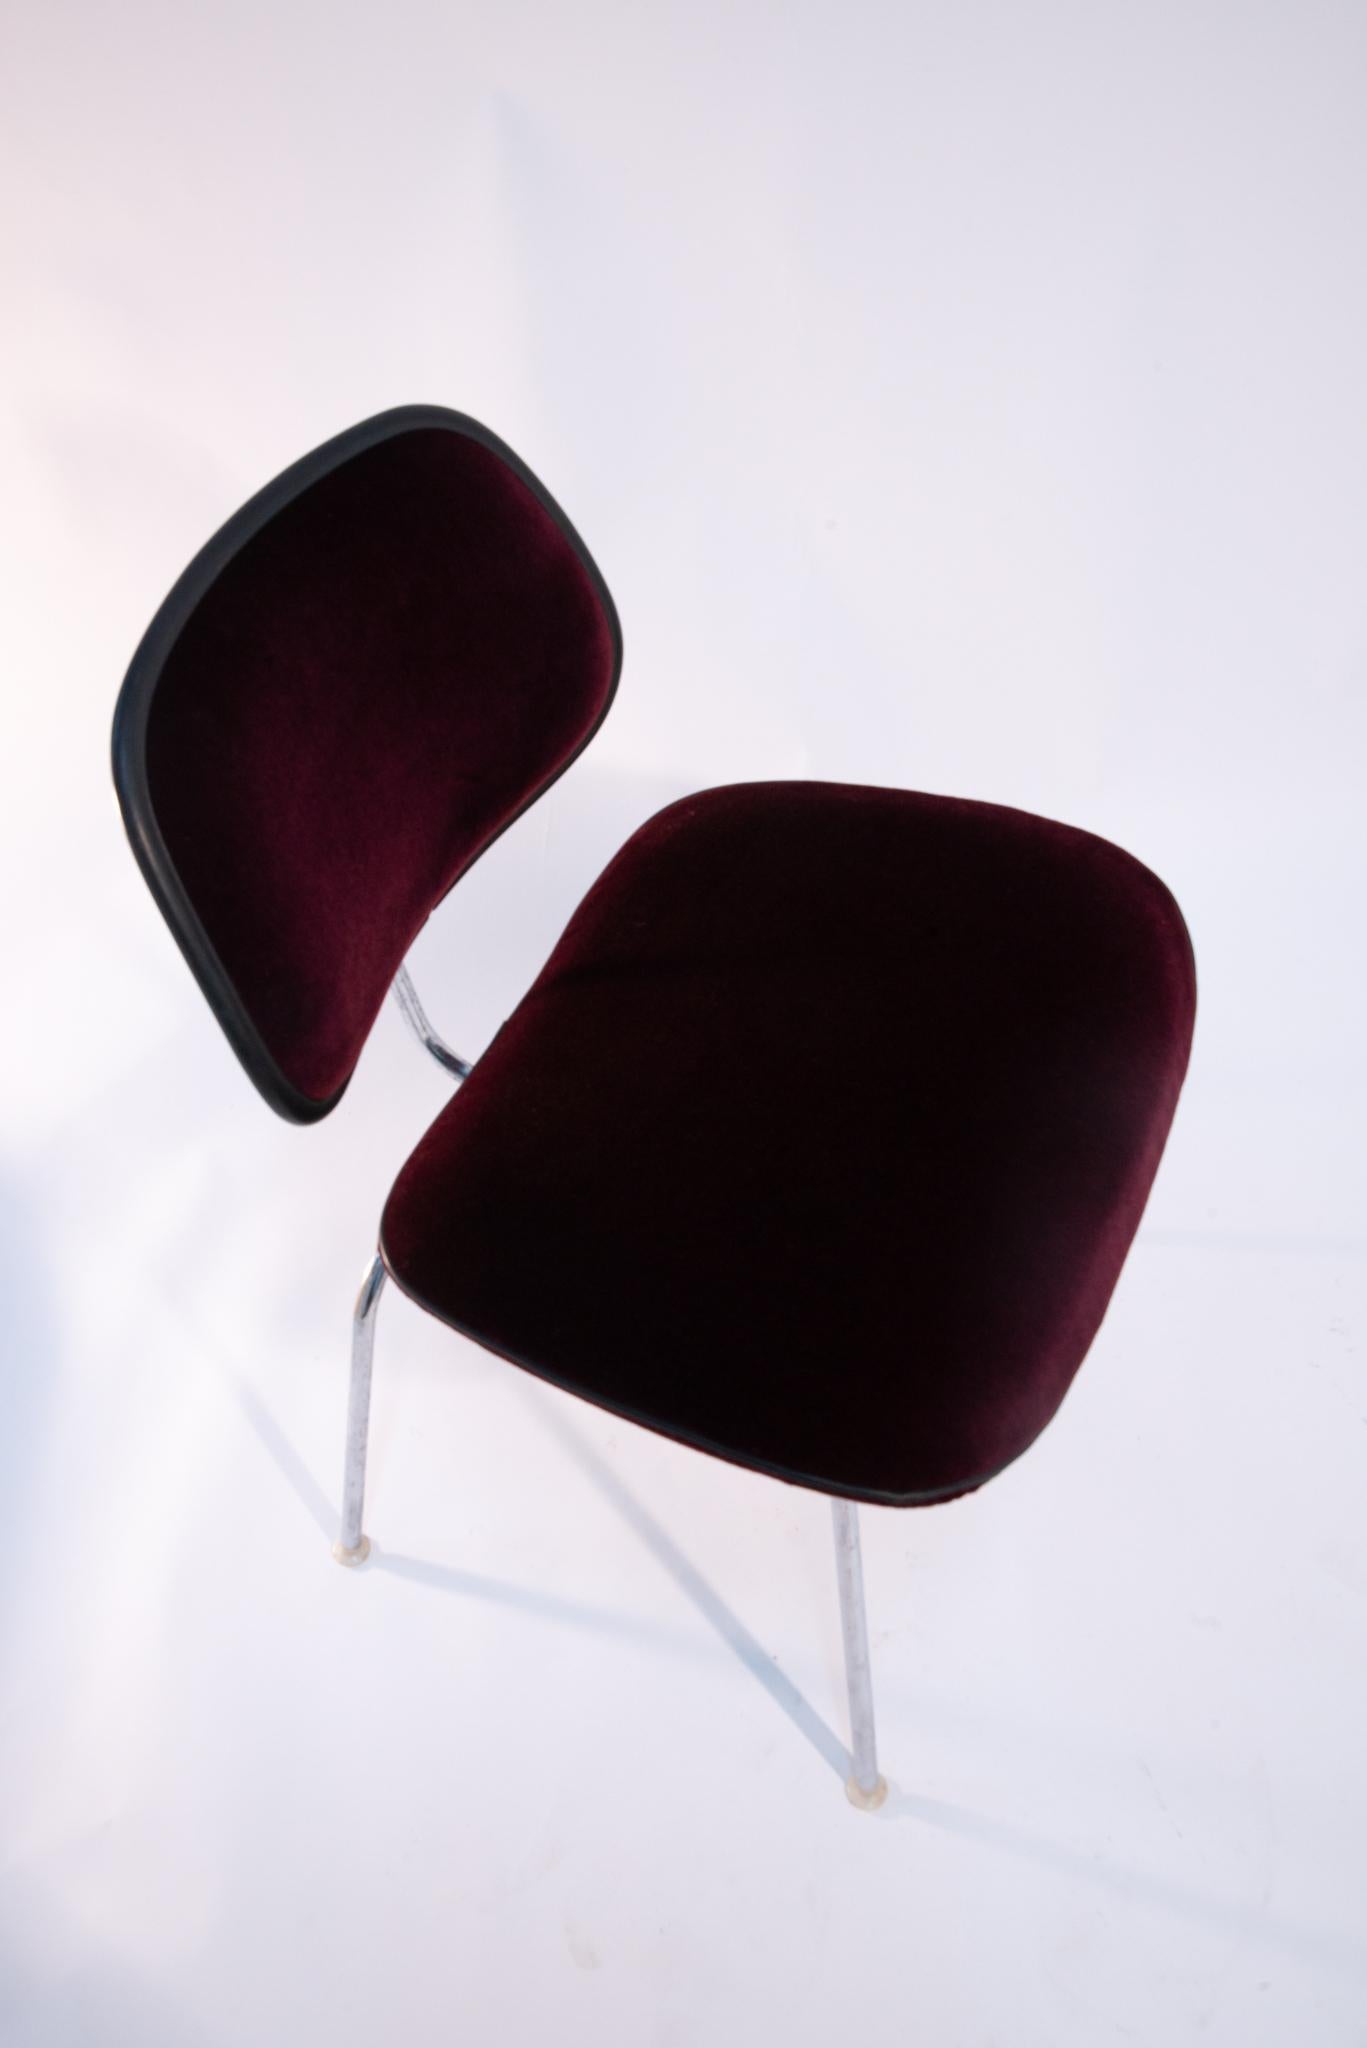 Ces chaises originales EC-127 padded DCM Chairs by Eames for Herman Miller ont été remises au goût du jour par un maître tapissier. Habillées d'un mohair bordeaux et finies par une trépointe en cuir noir, ces chaises de salle à manger emblématiques